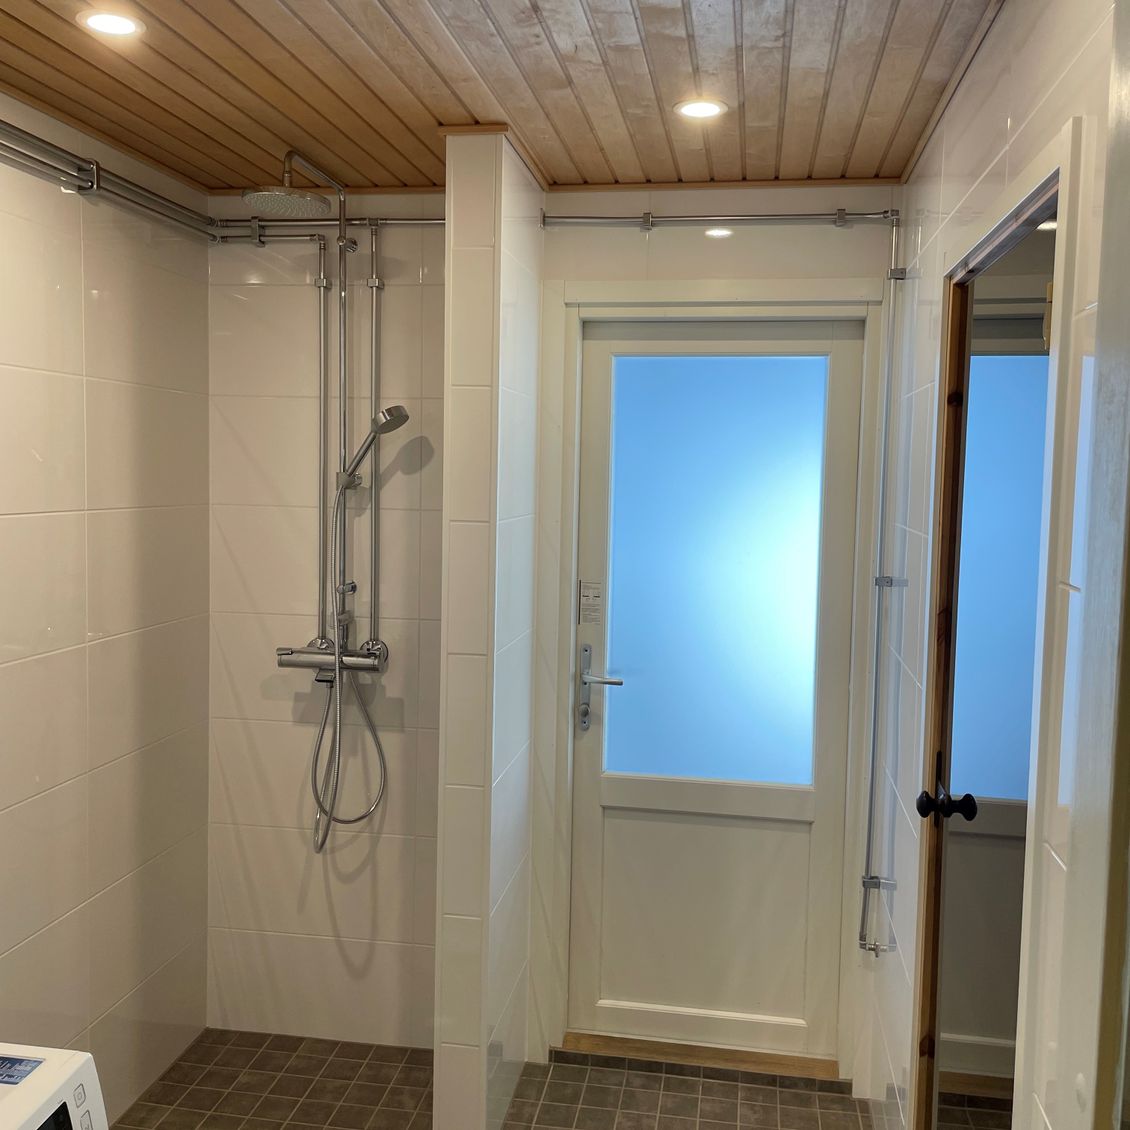 Kylpyhuone seinän sisään upotetulla saippuakotelolla